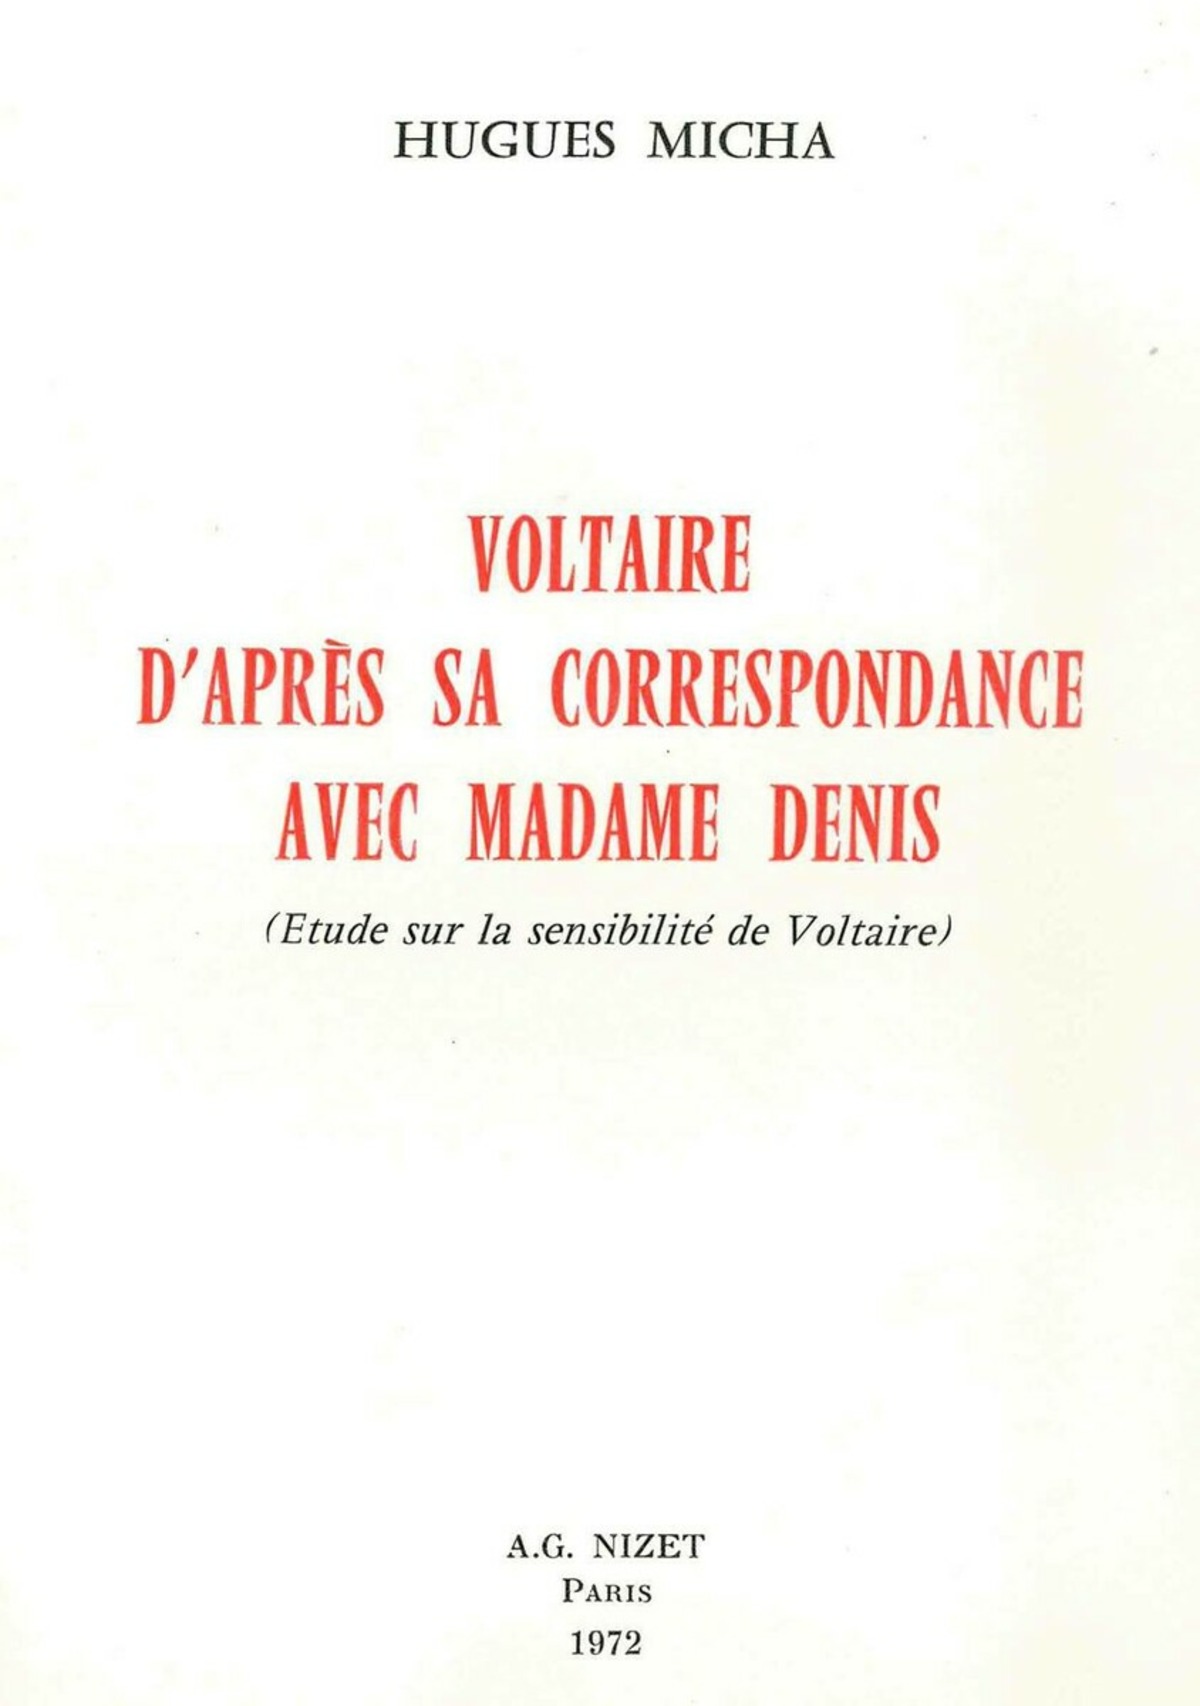 Voltaire d'après sa correspondance avec Madame Denis